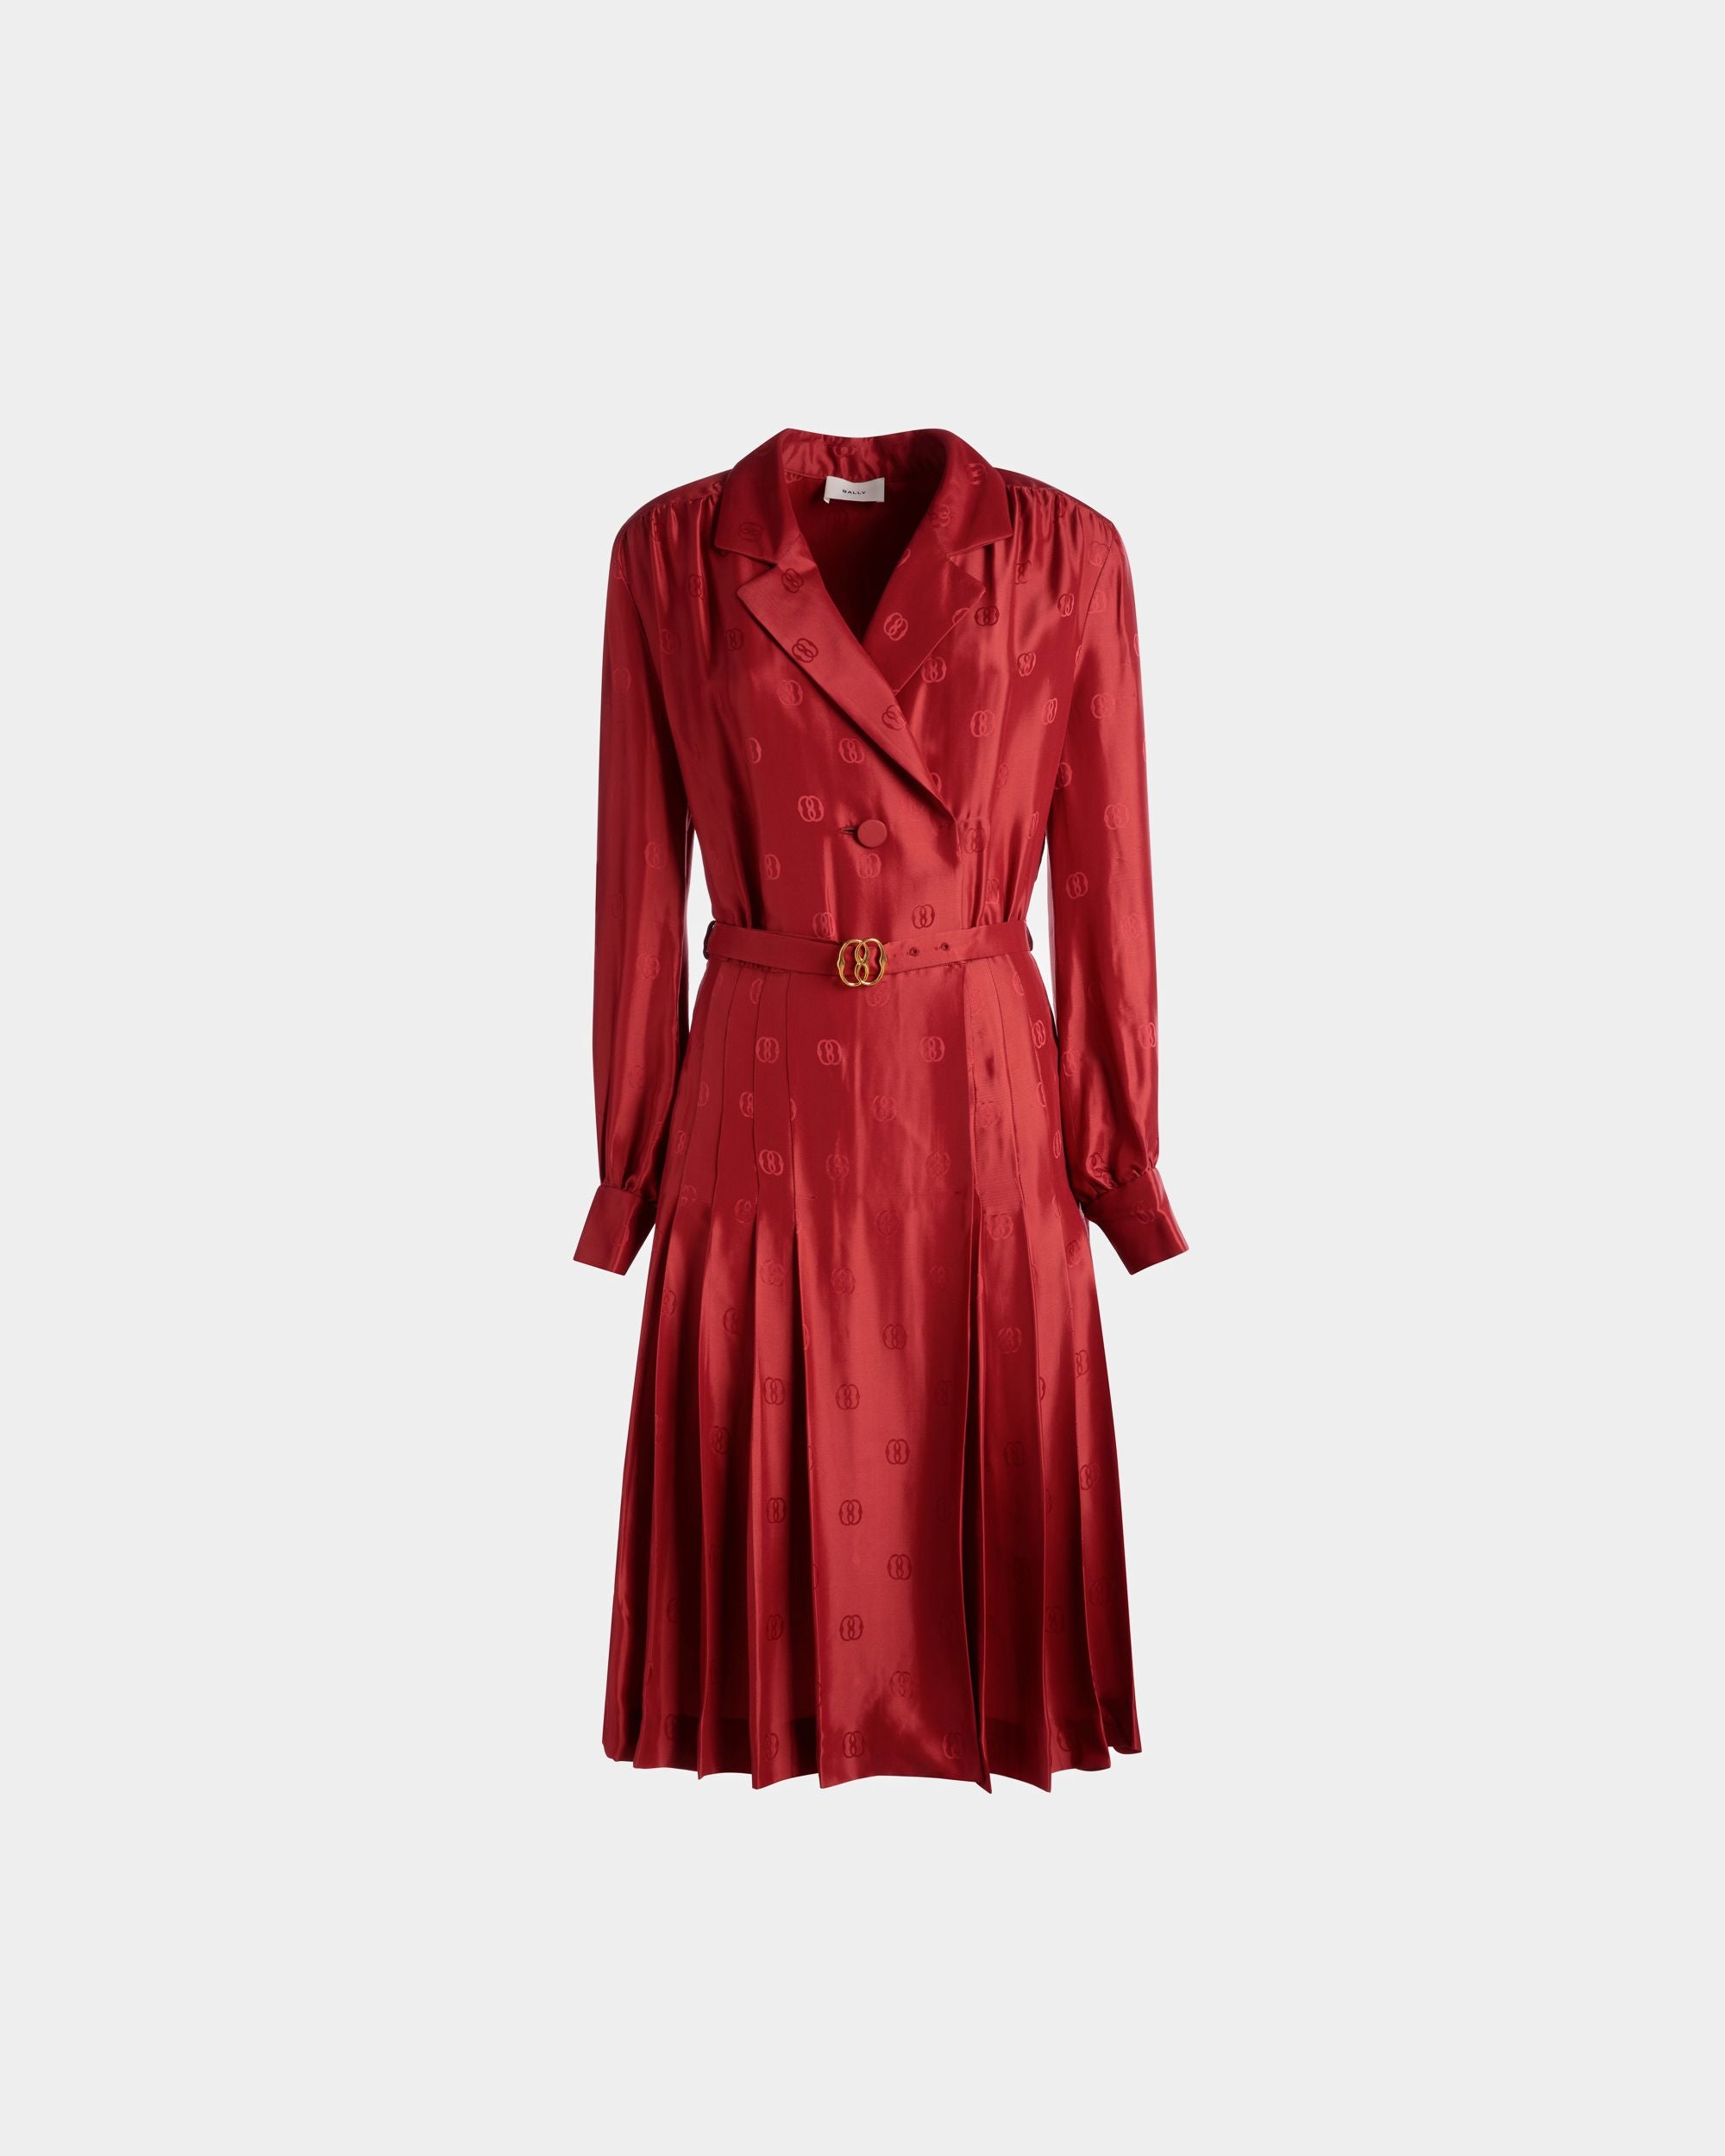 Emblem Belted Dress | Women's Dress | Deep Ruby Silk | Bally | Still Life Front